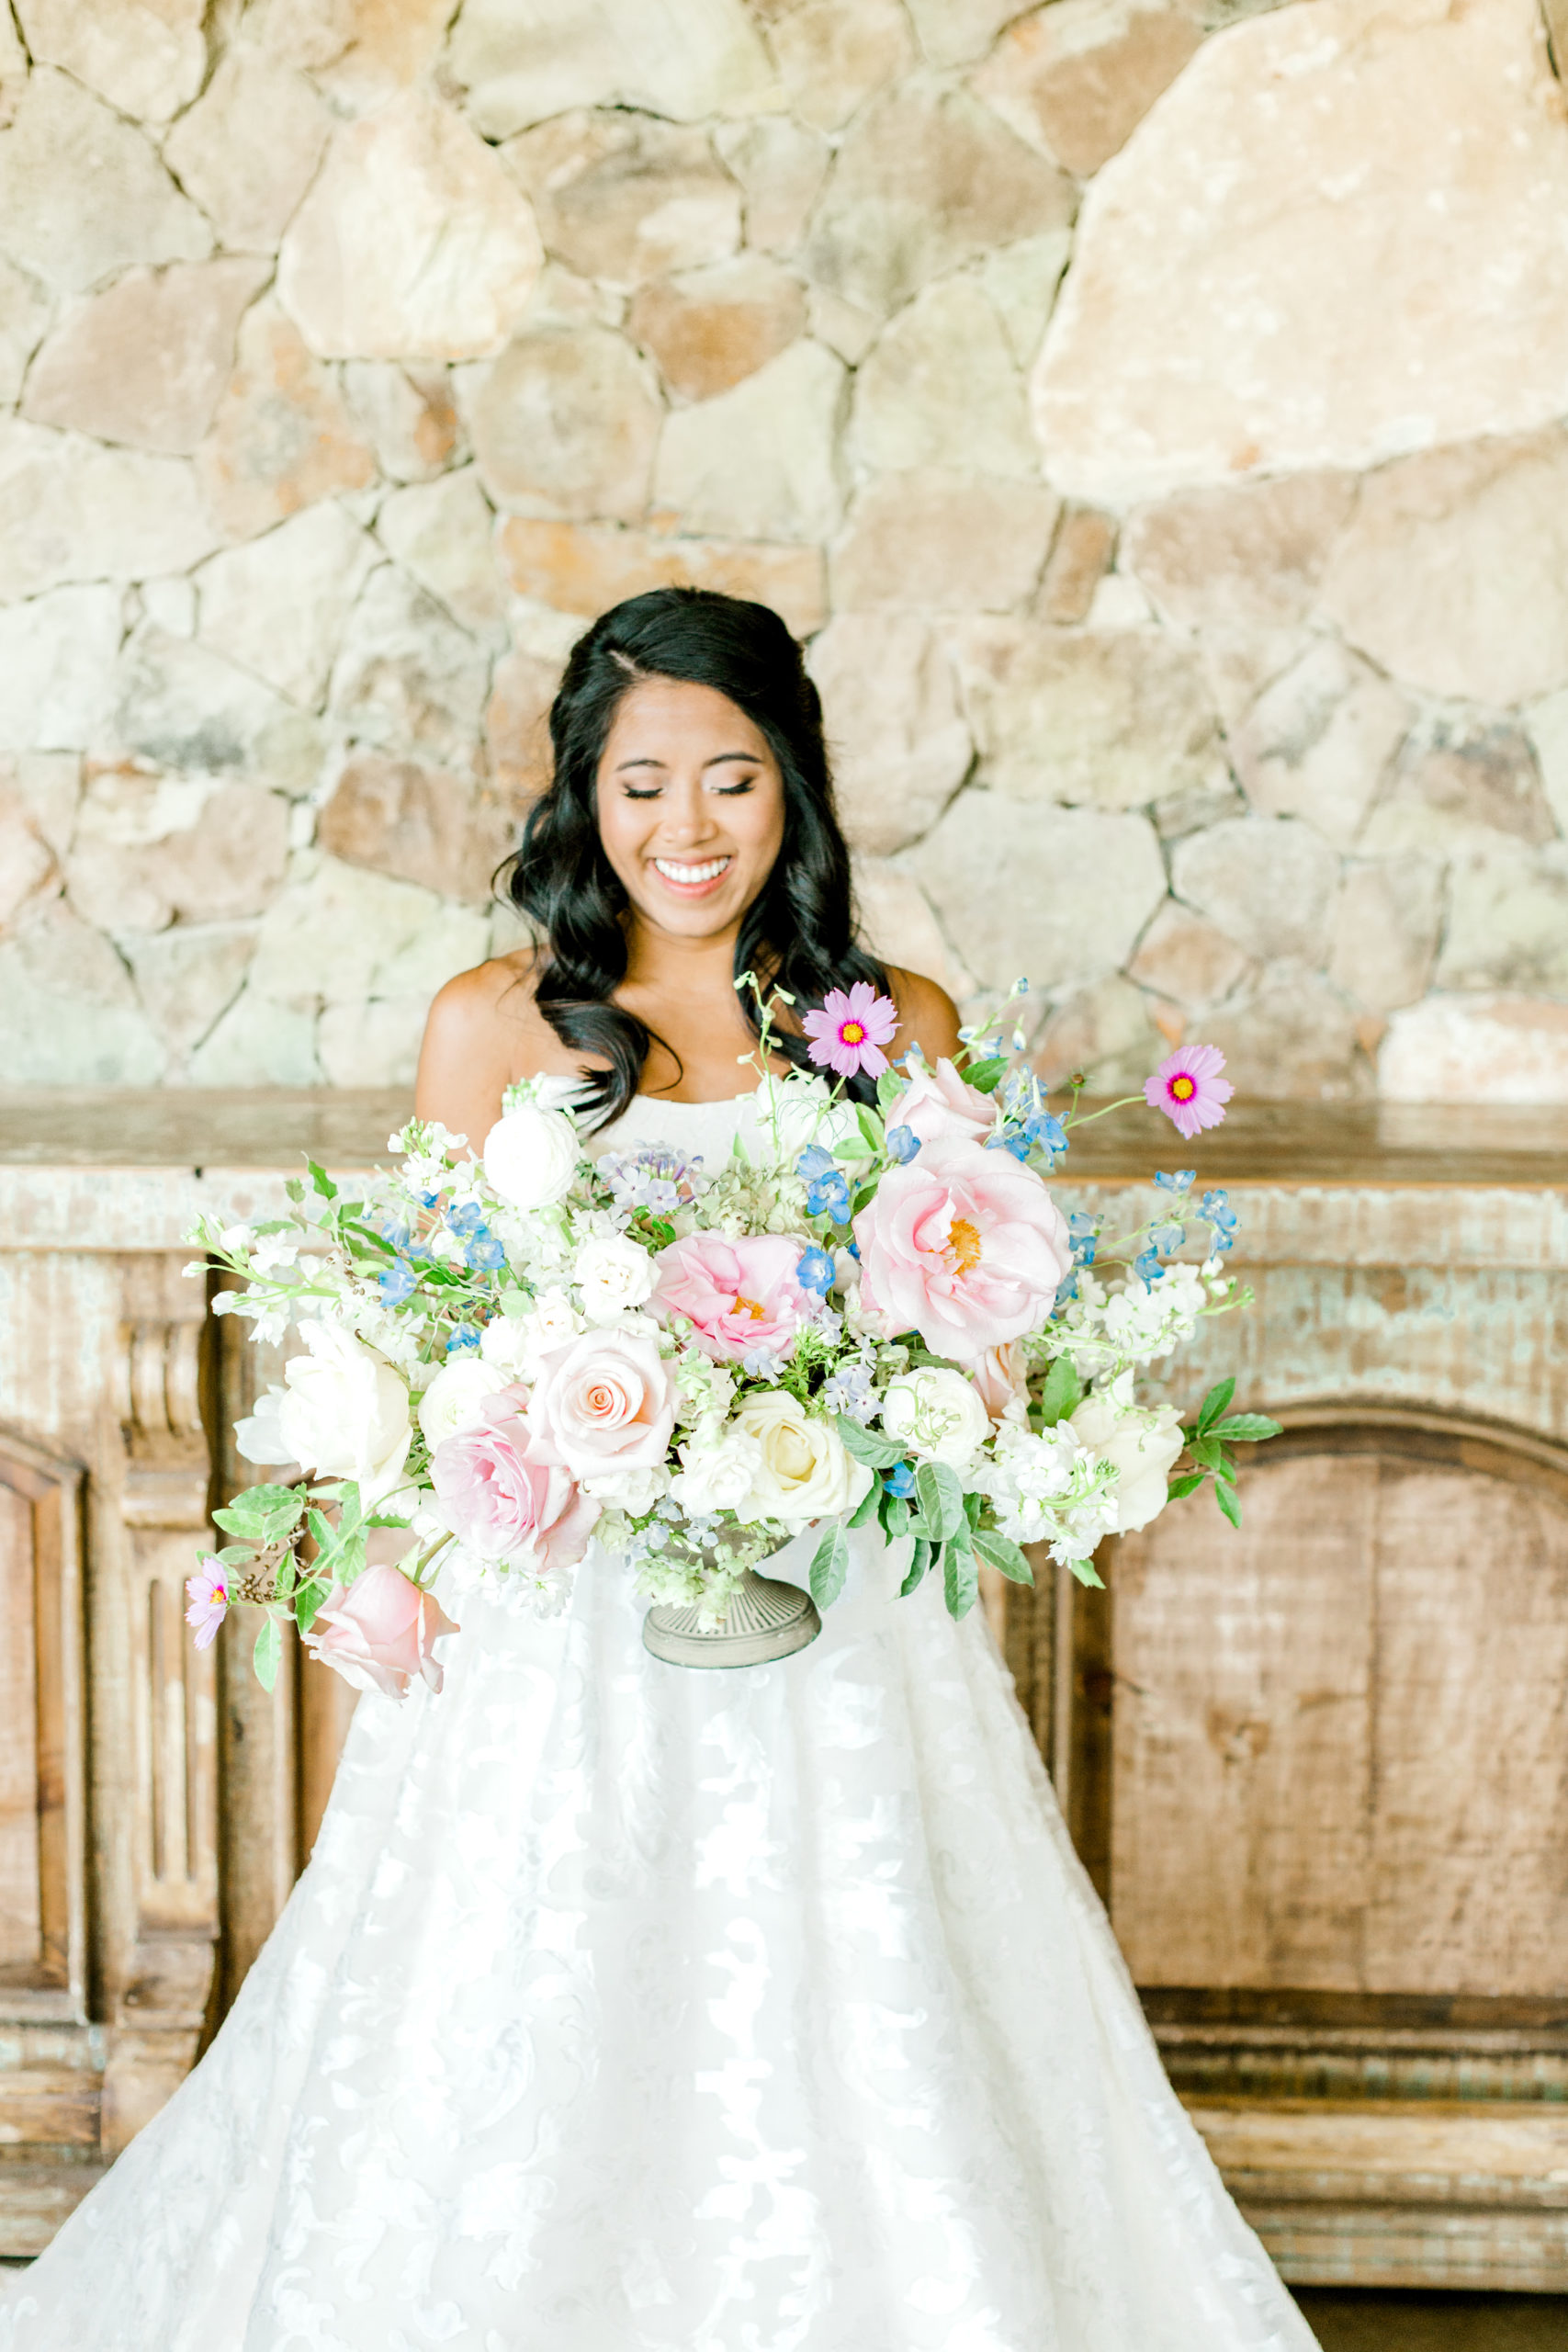 Bride holding large floral bouquet